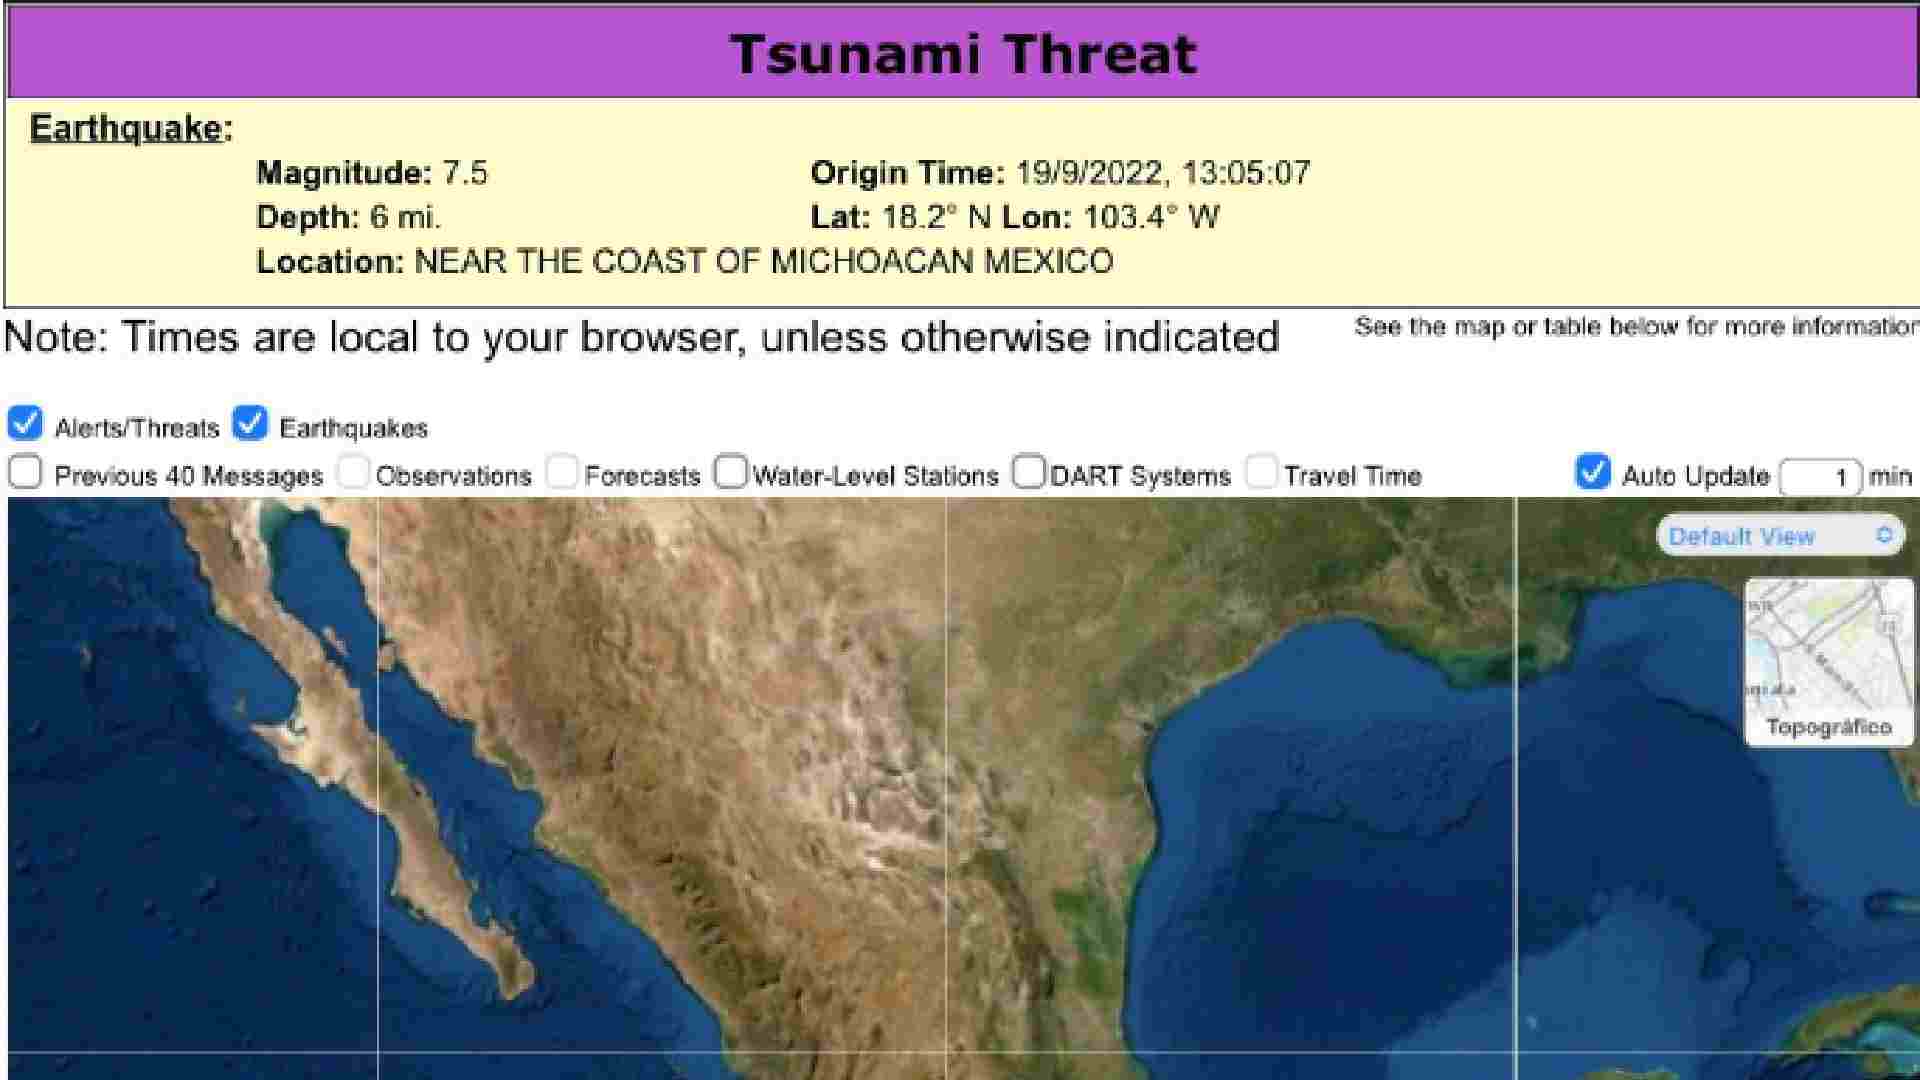 El sismo de magnitud 7.4 se localizó en toda la geografía de Michoacán y partes de Jalisco, Colima y el área metropolitana. | Foto: U.S. Tsunami Warning System